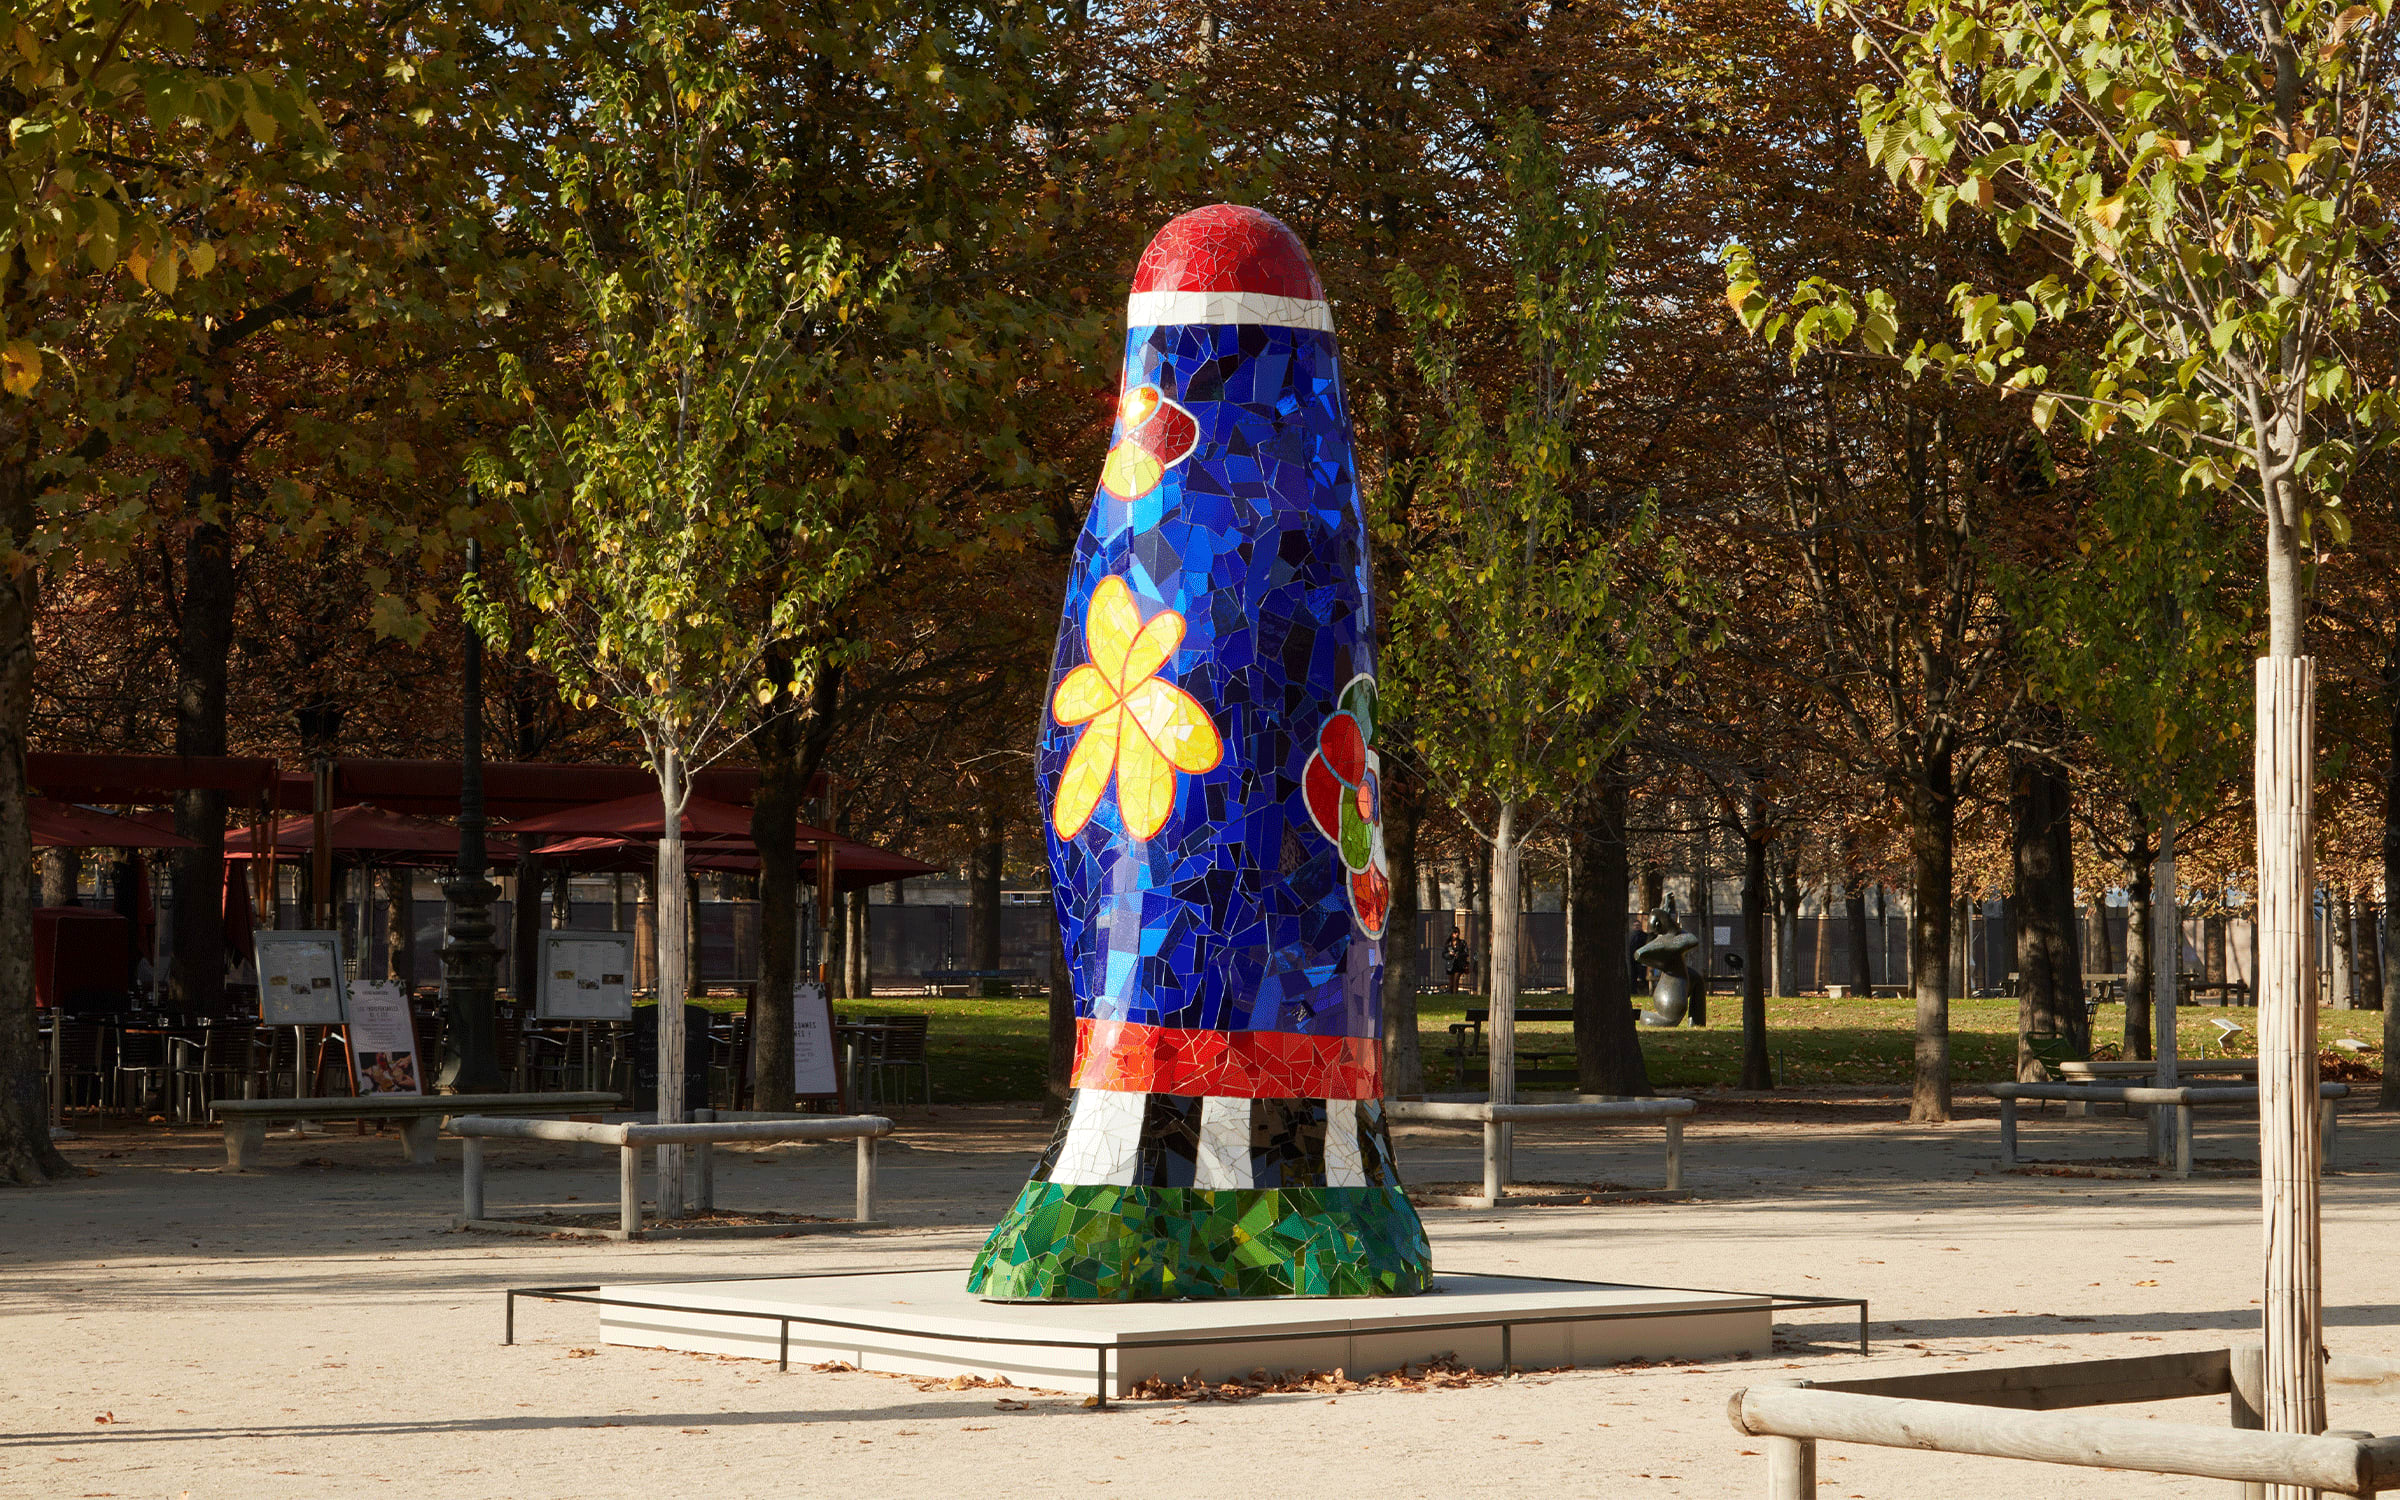 Installation view of Niki de Saint Phalle’s Obélisque bleu avec fleurs (1992) at the Jardin des Tuileries, Paris, 2022.